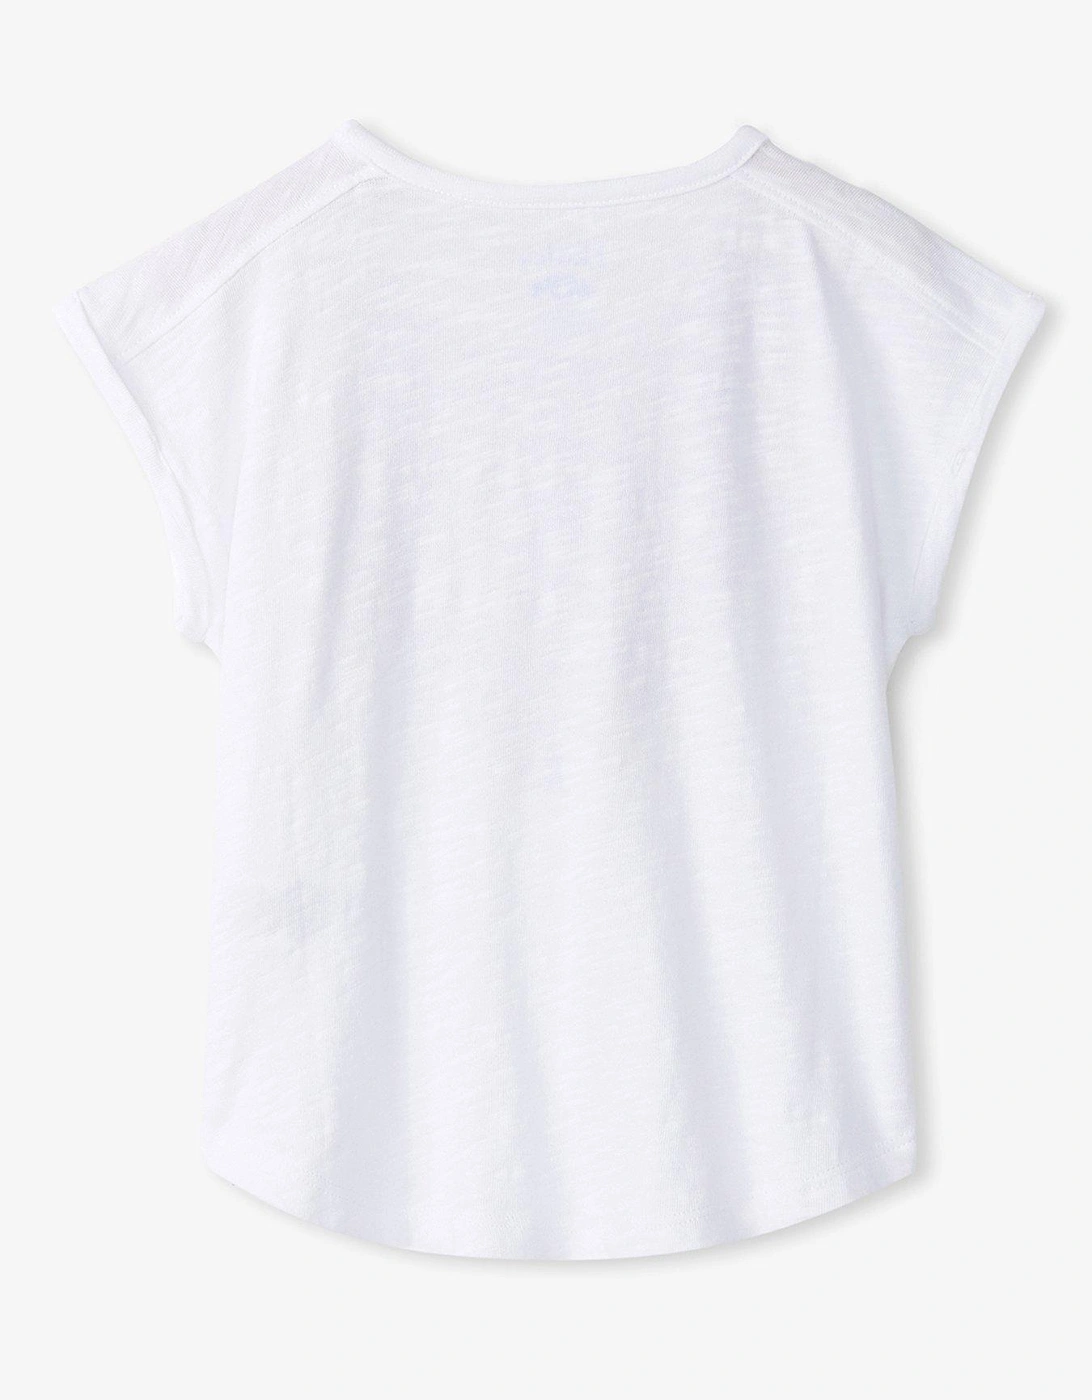 Girls Boho Relaxed Short Sleeve T-Shirt - White